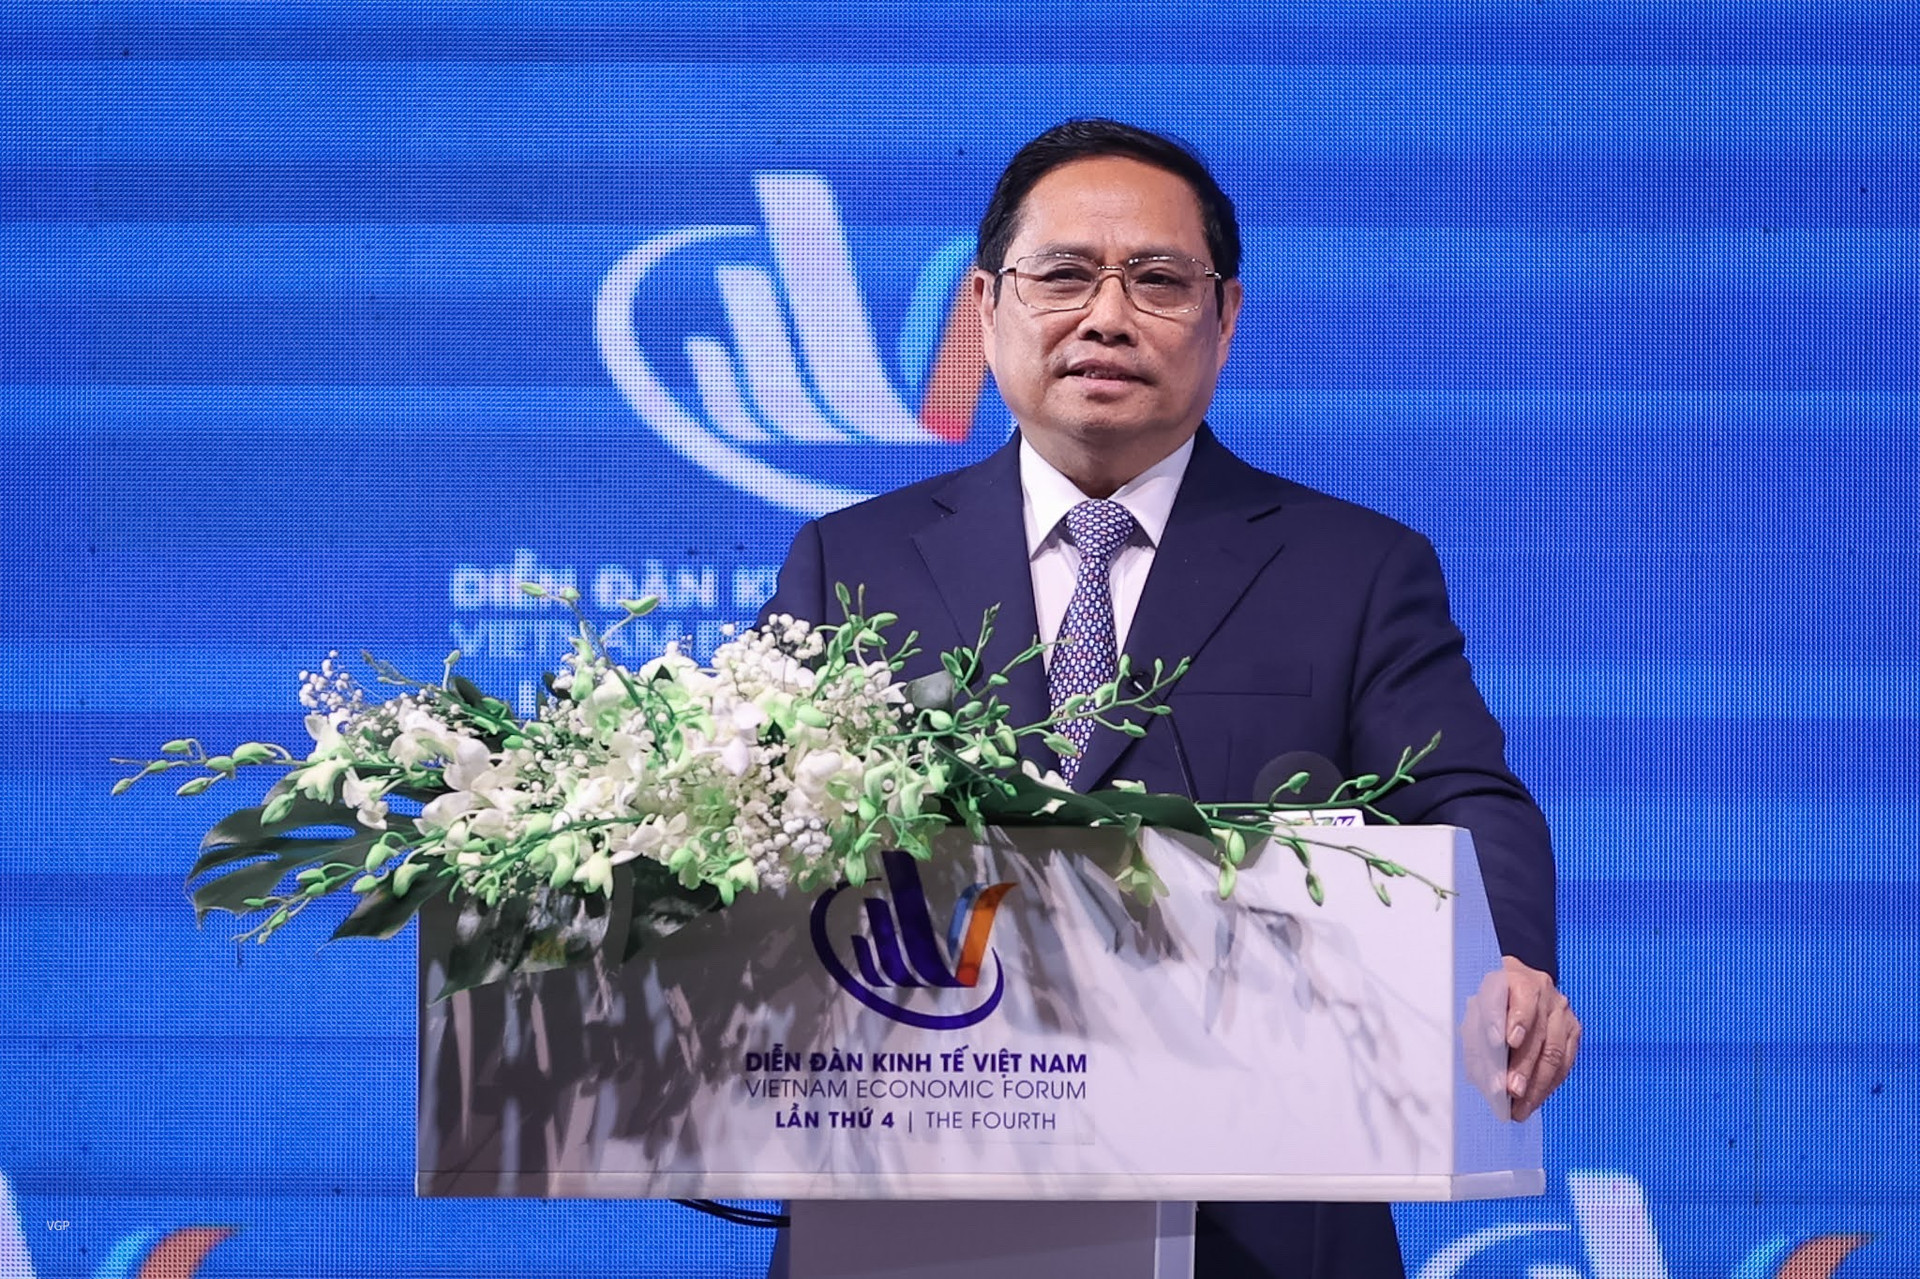 Thủ tướng Phạm Minh Chính phát biểu tại diễn đàn kinh tế Việt Nam lần thứ 4.